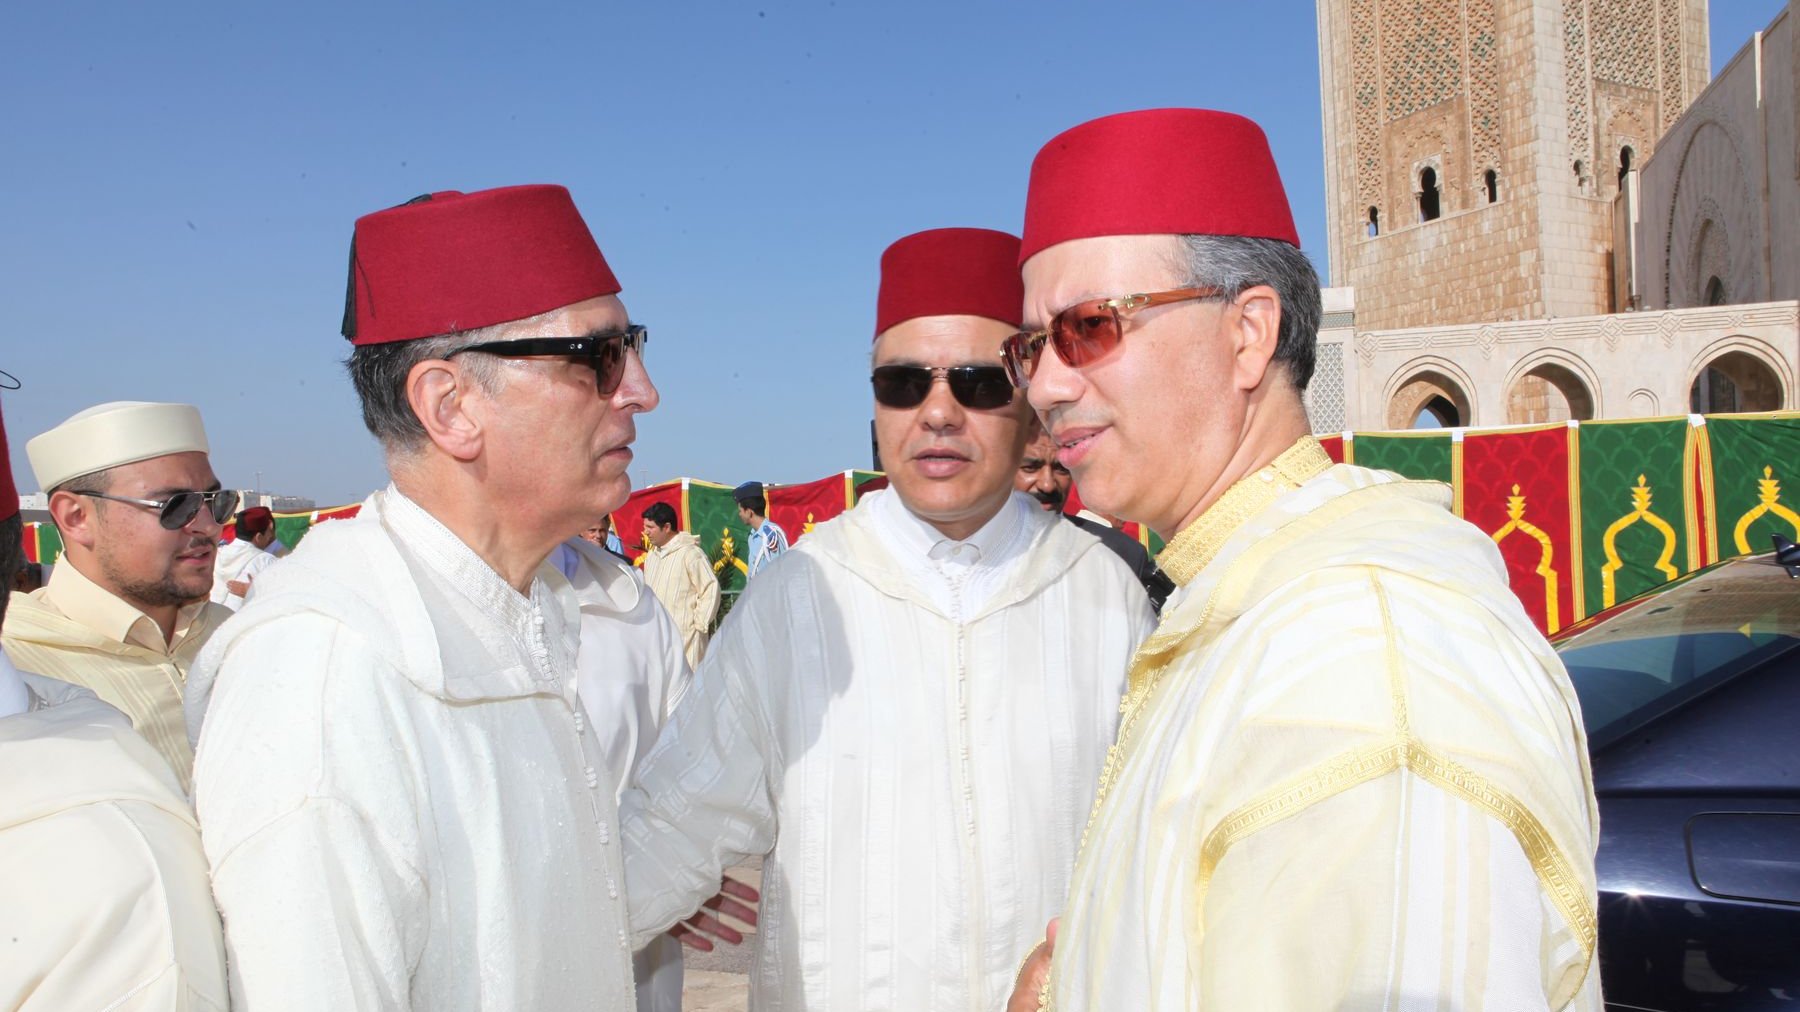 De nombreuses personnalités se sont donné rendez-vous dans la grande mosquée, notamment Ahmed Ouazzani Touhami, gouverneur chargé du secrétariat général Casablanca, et Mustapha Mellouk, Président de l'Association du Grand Casablanca
